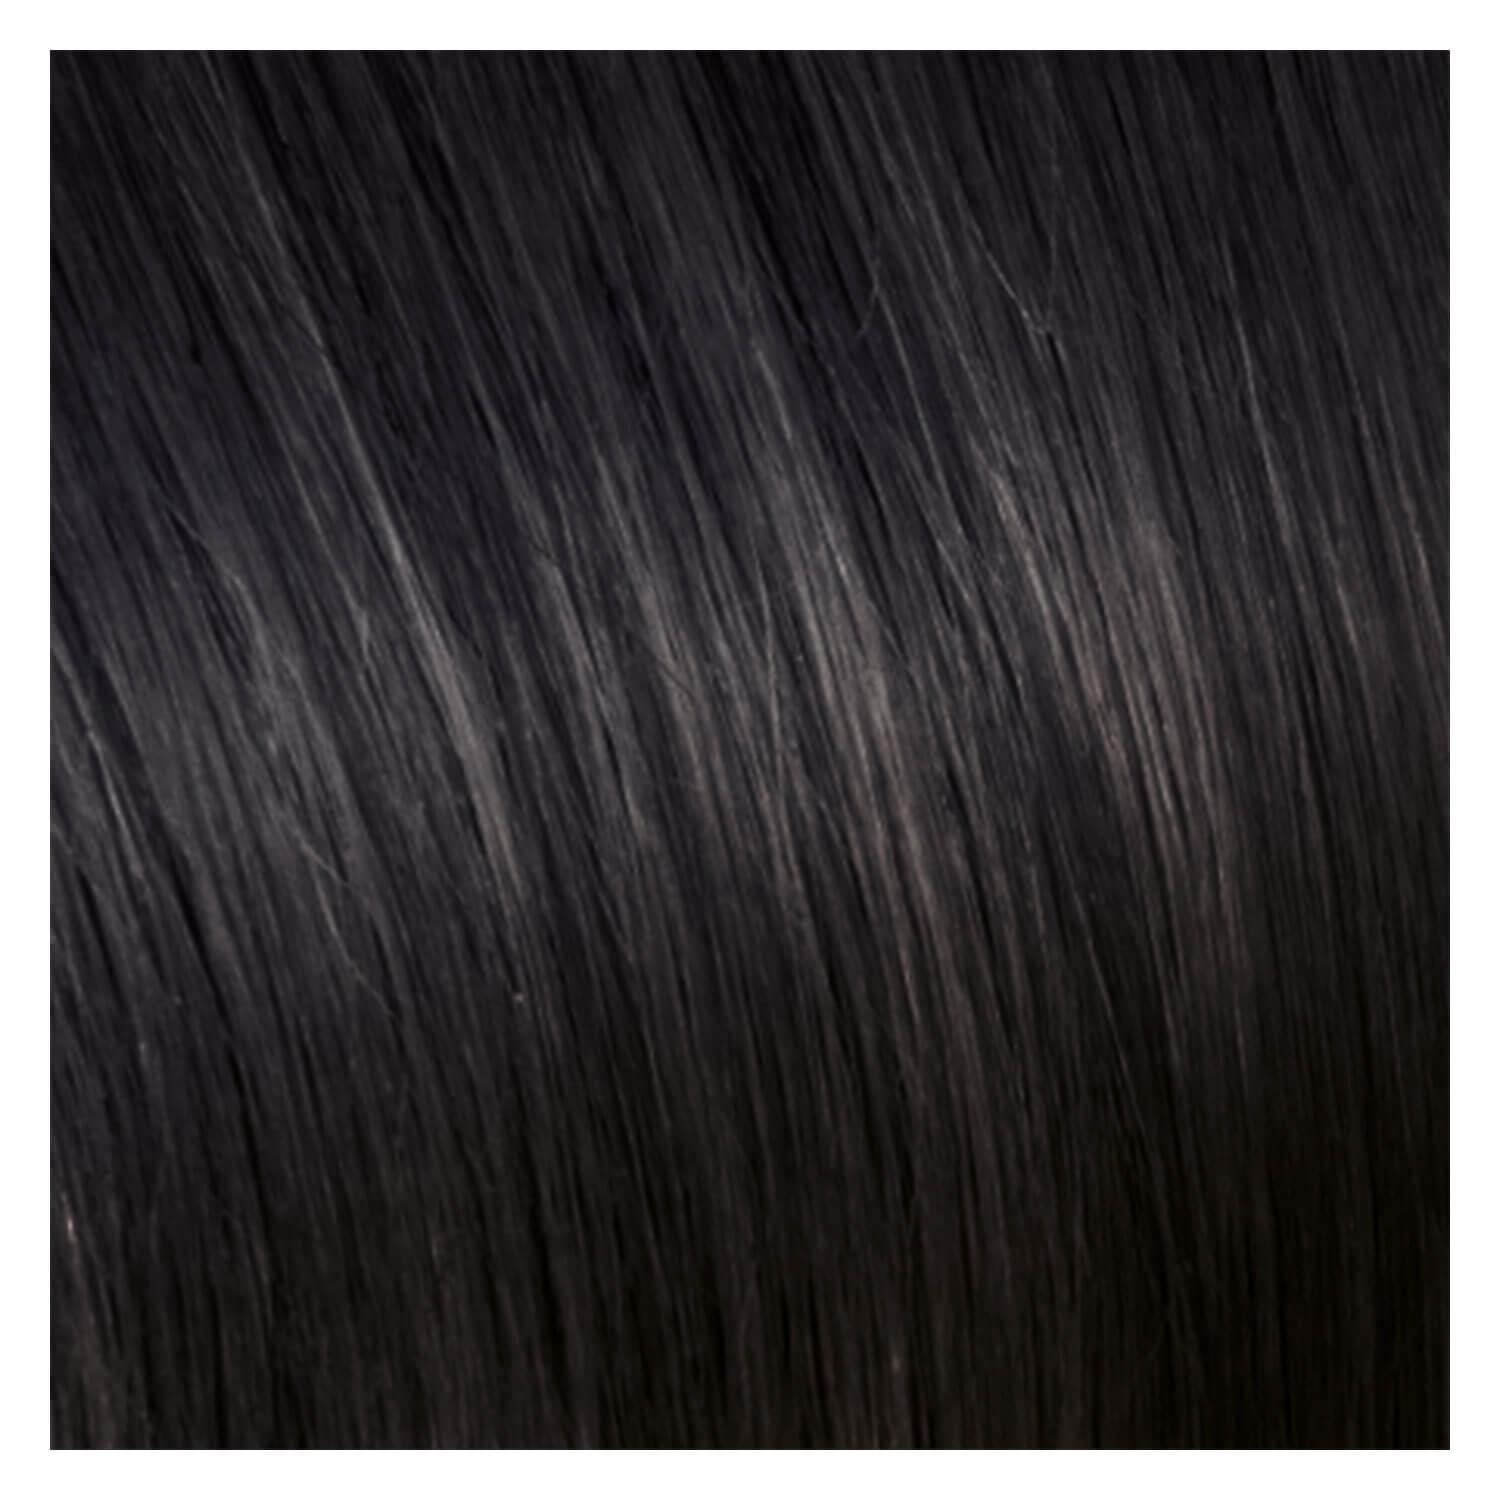 SHE Bonding-System Hair Extensions Straight - 1B Noir 55/60cm